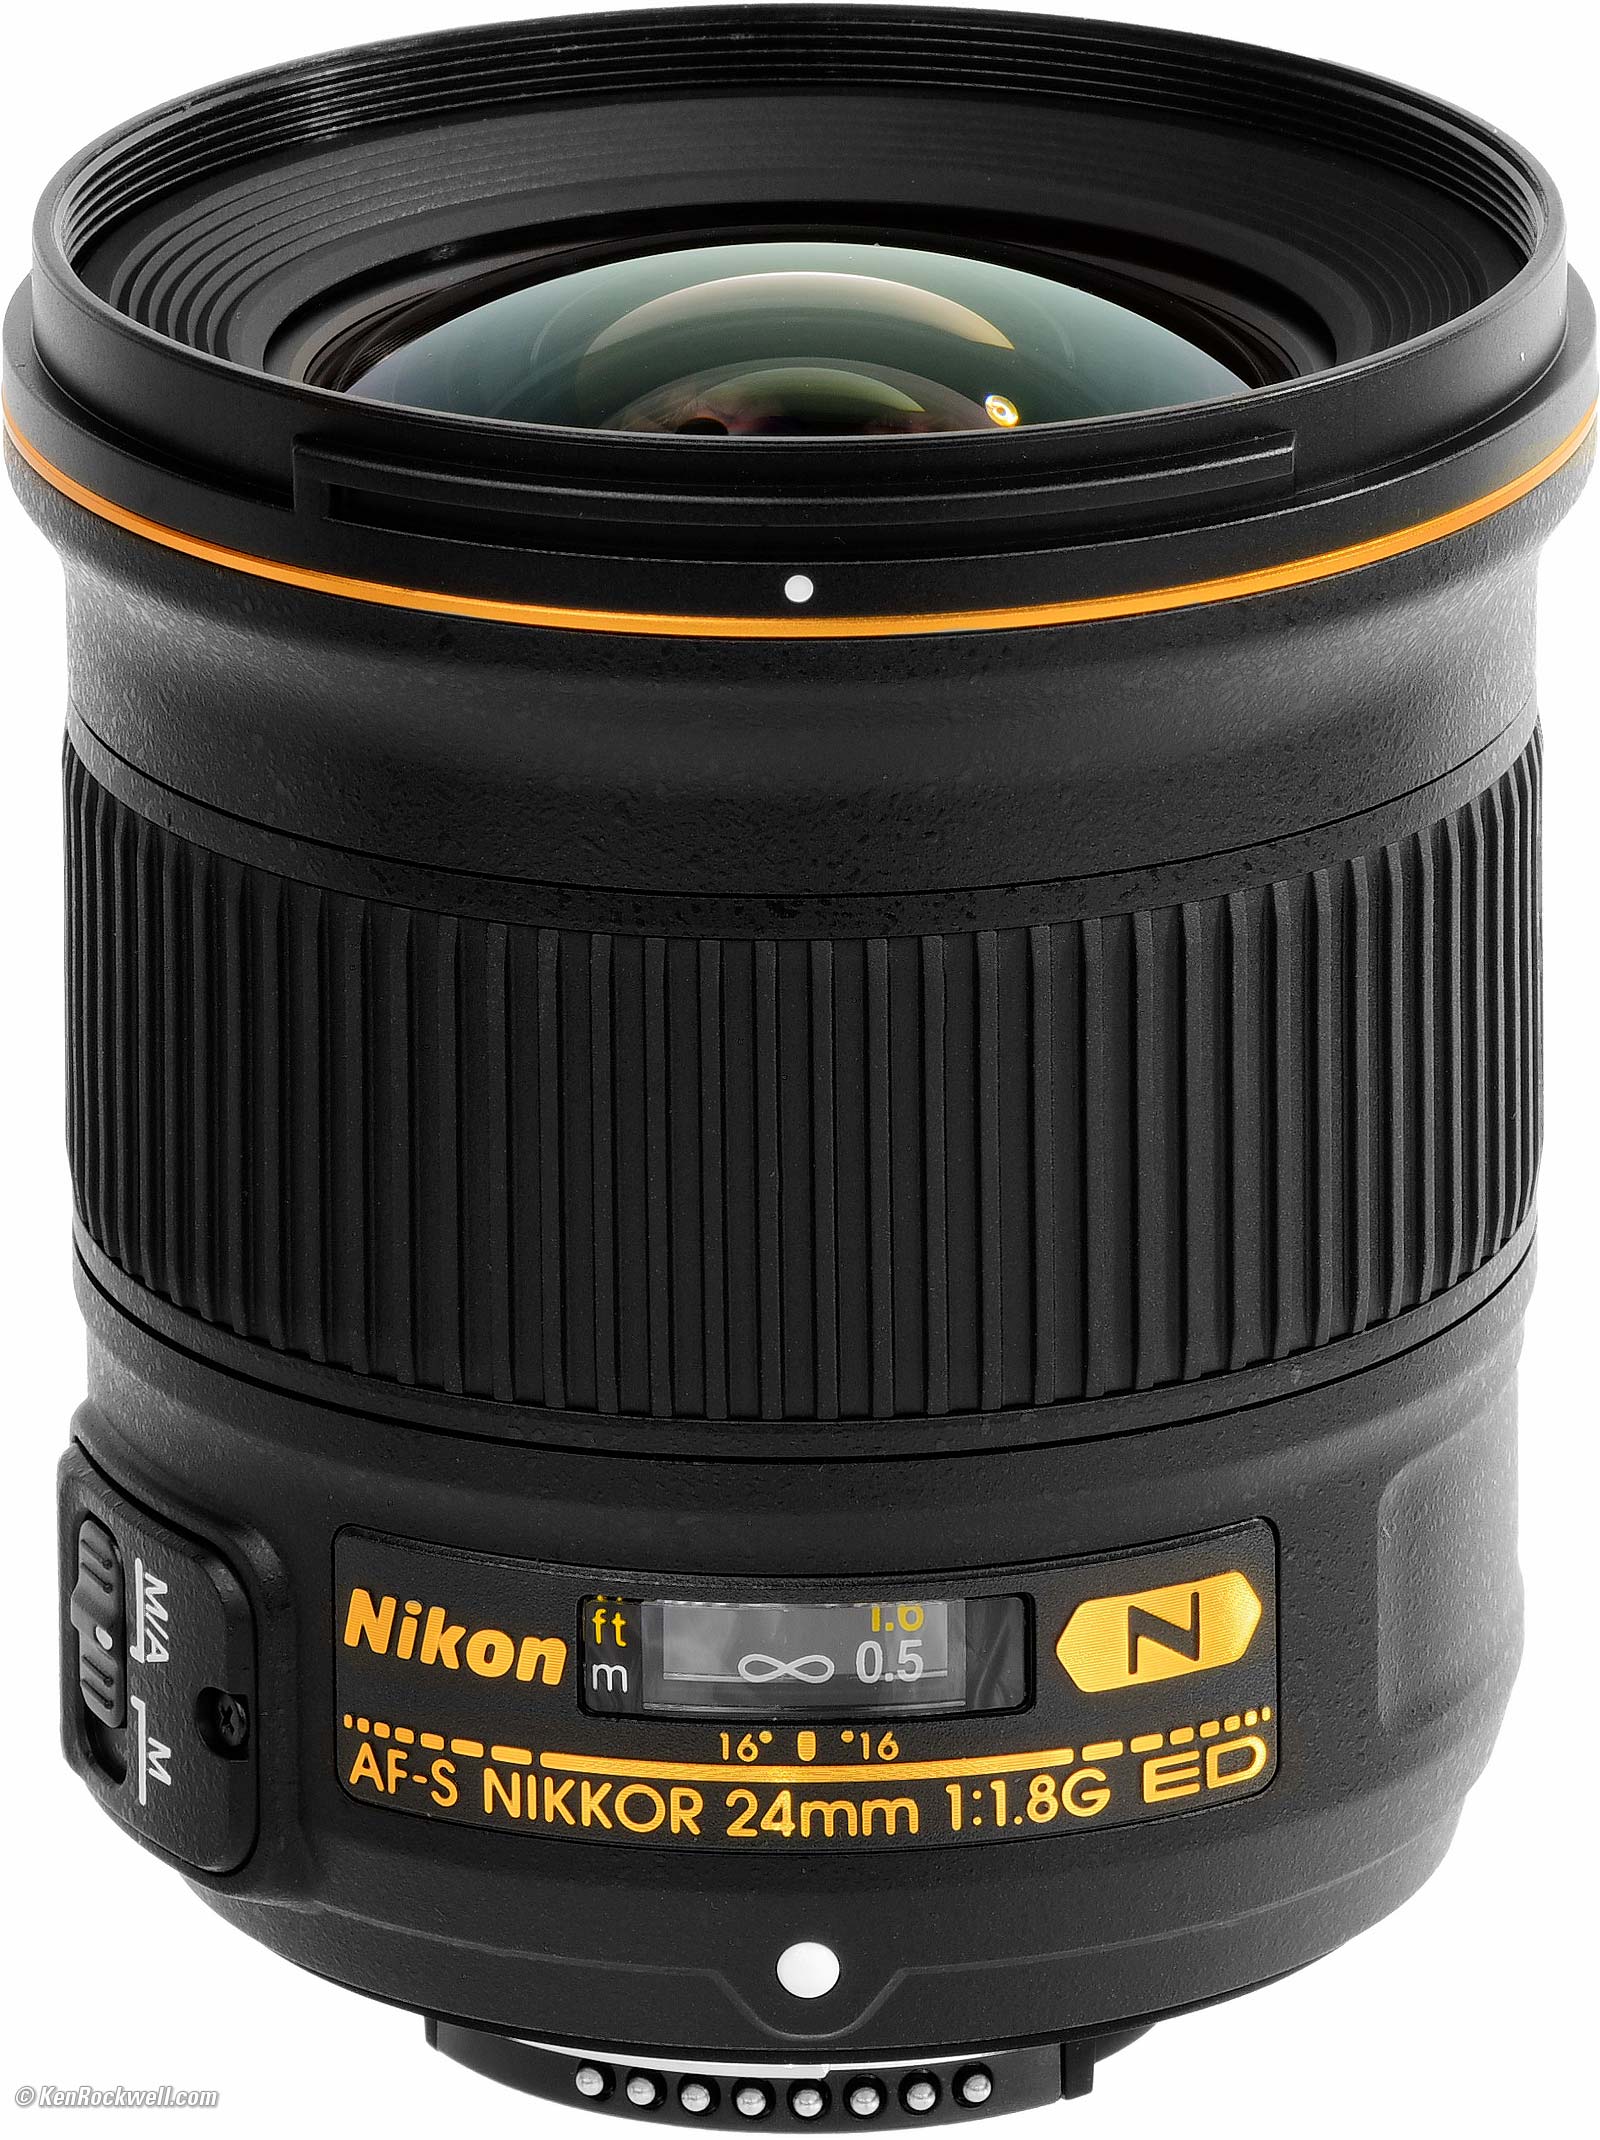 Nikon 24mm f/1.8 Review